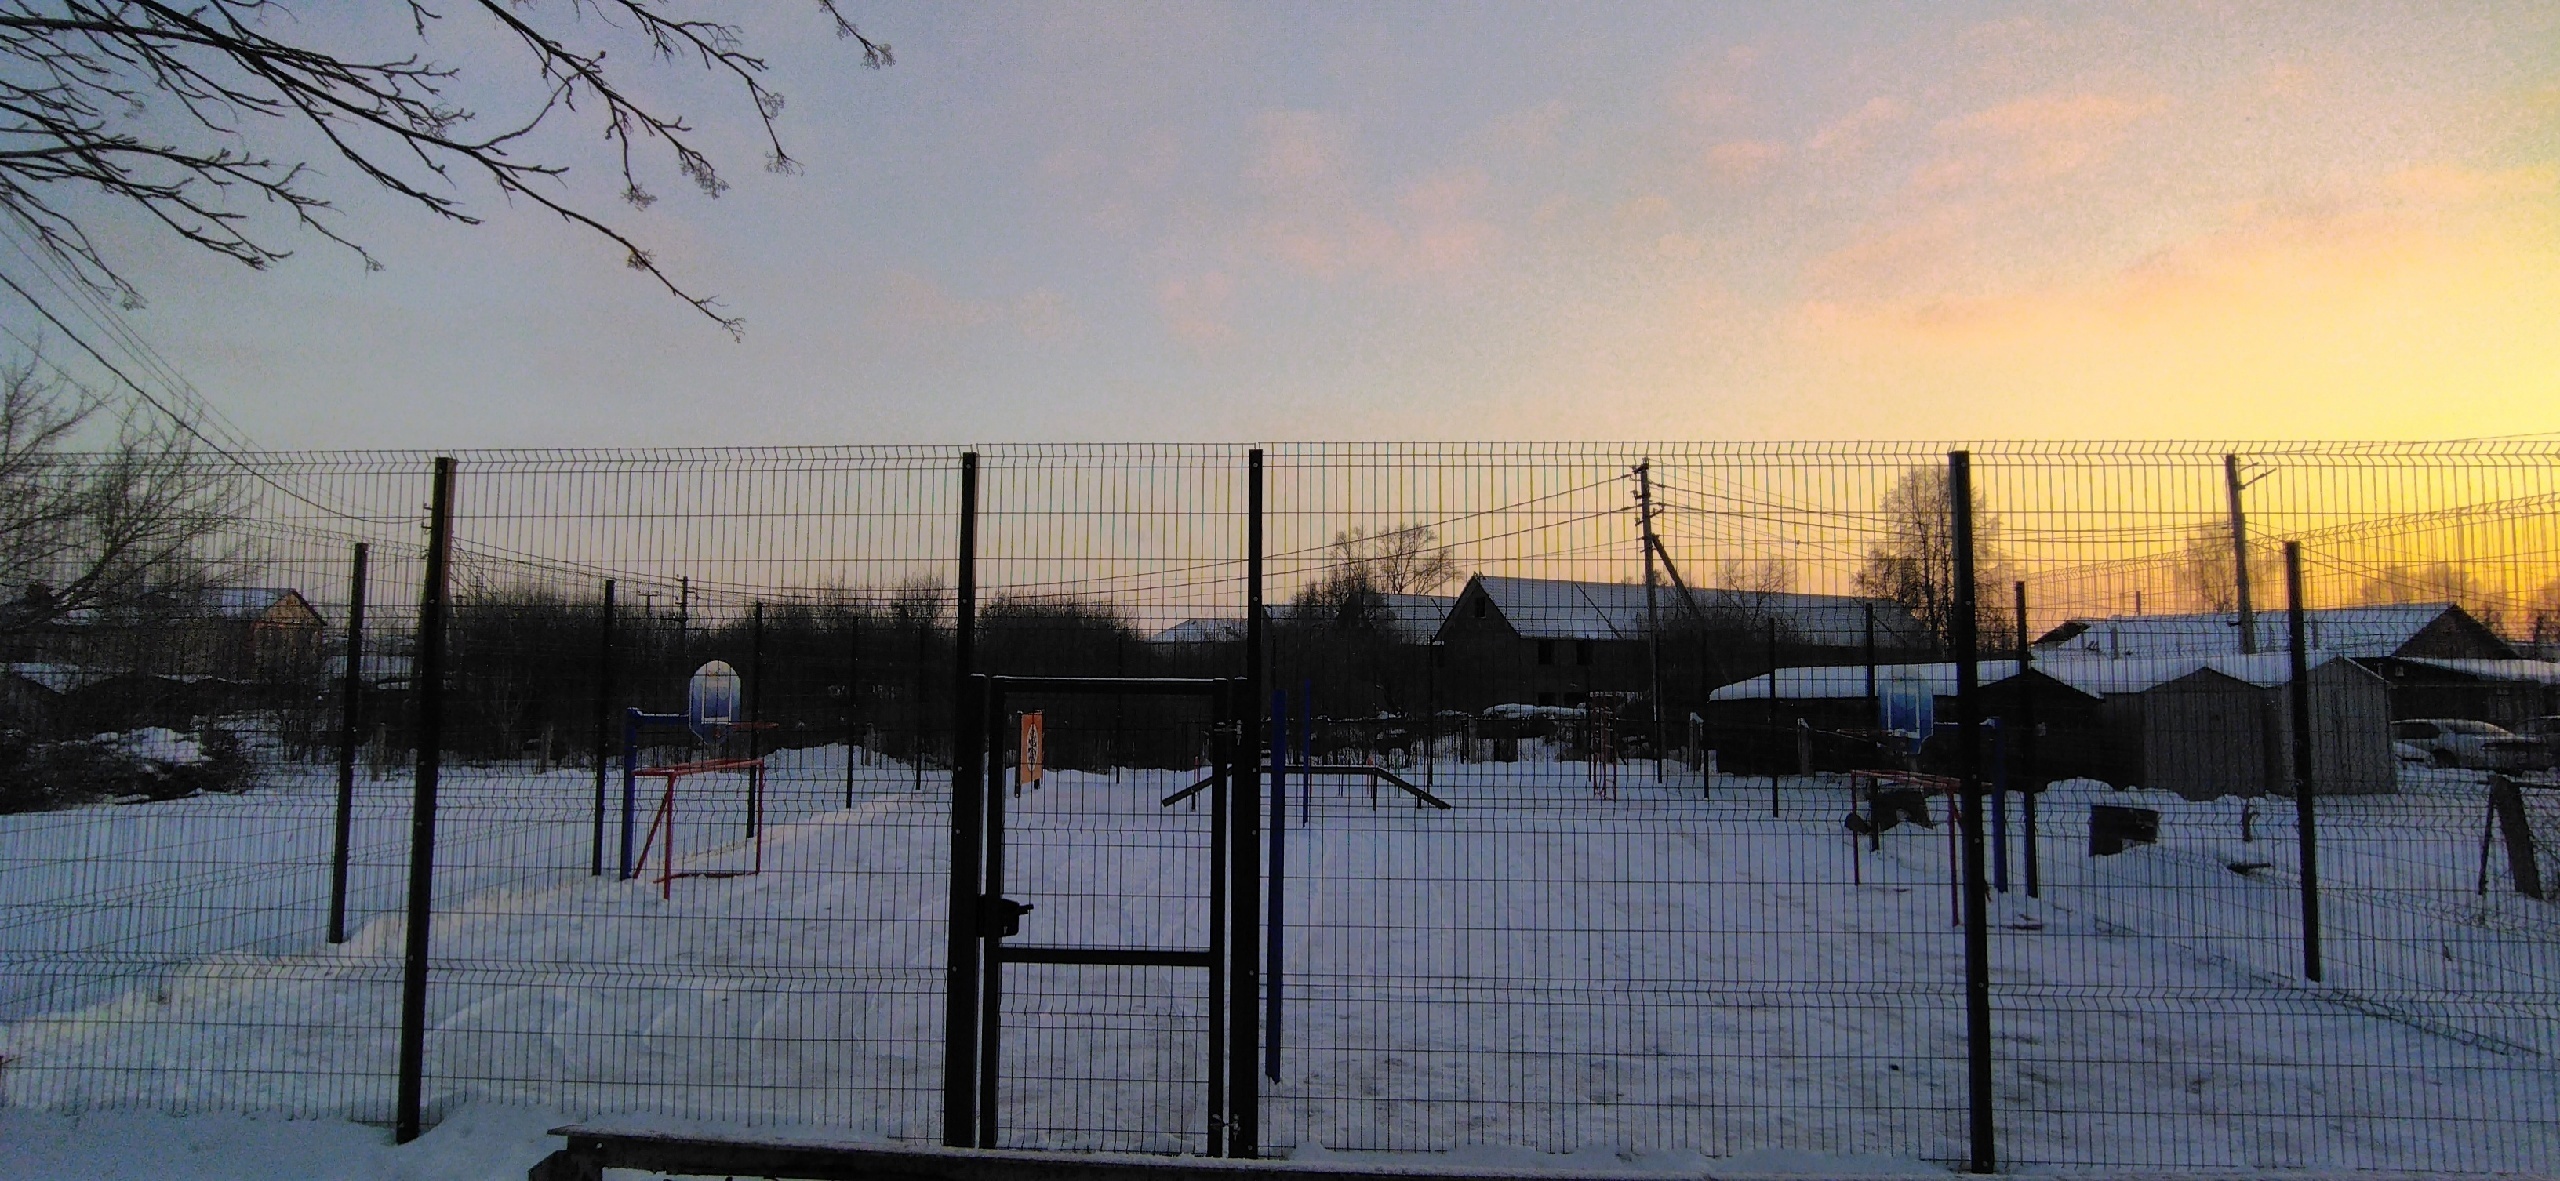 В детском саду Уфимского района состоится открытие спортивной площадки